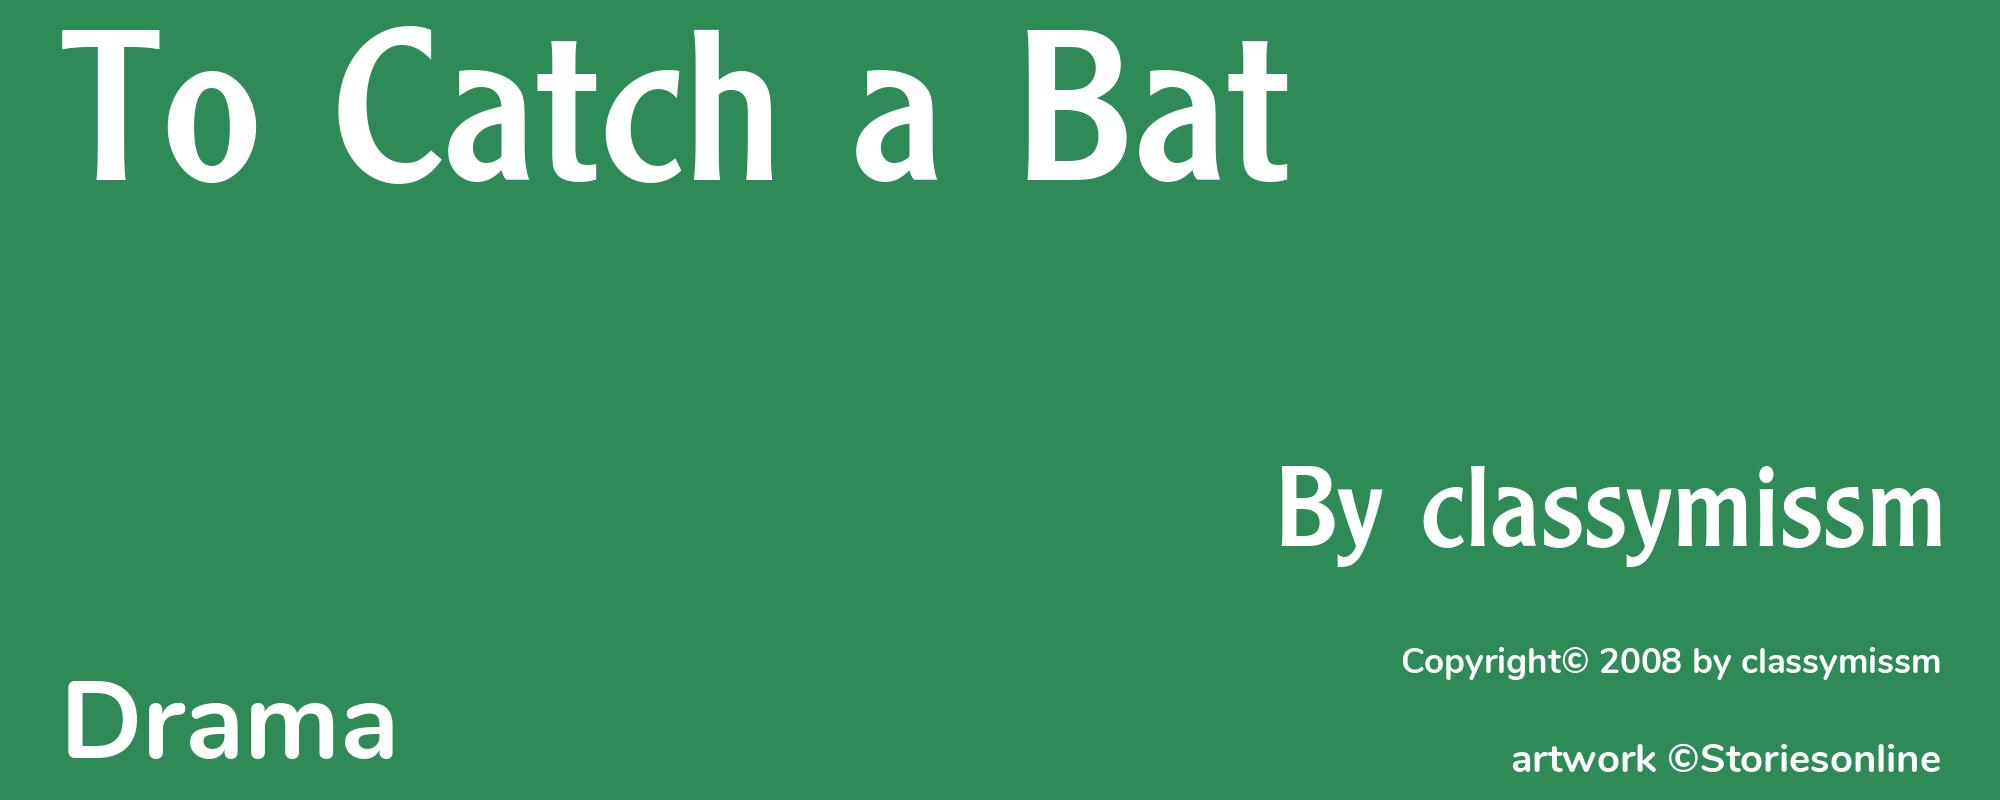 To Catch a Bat - Cover